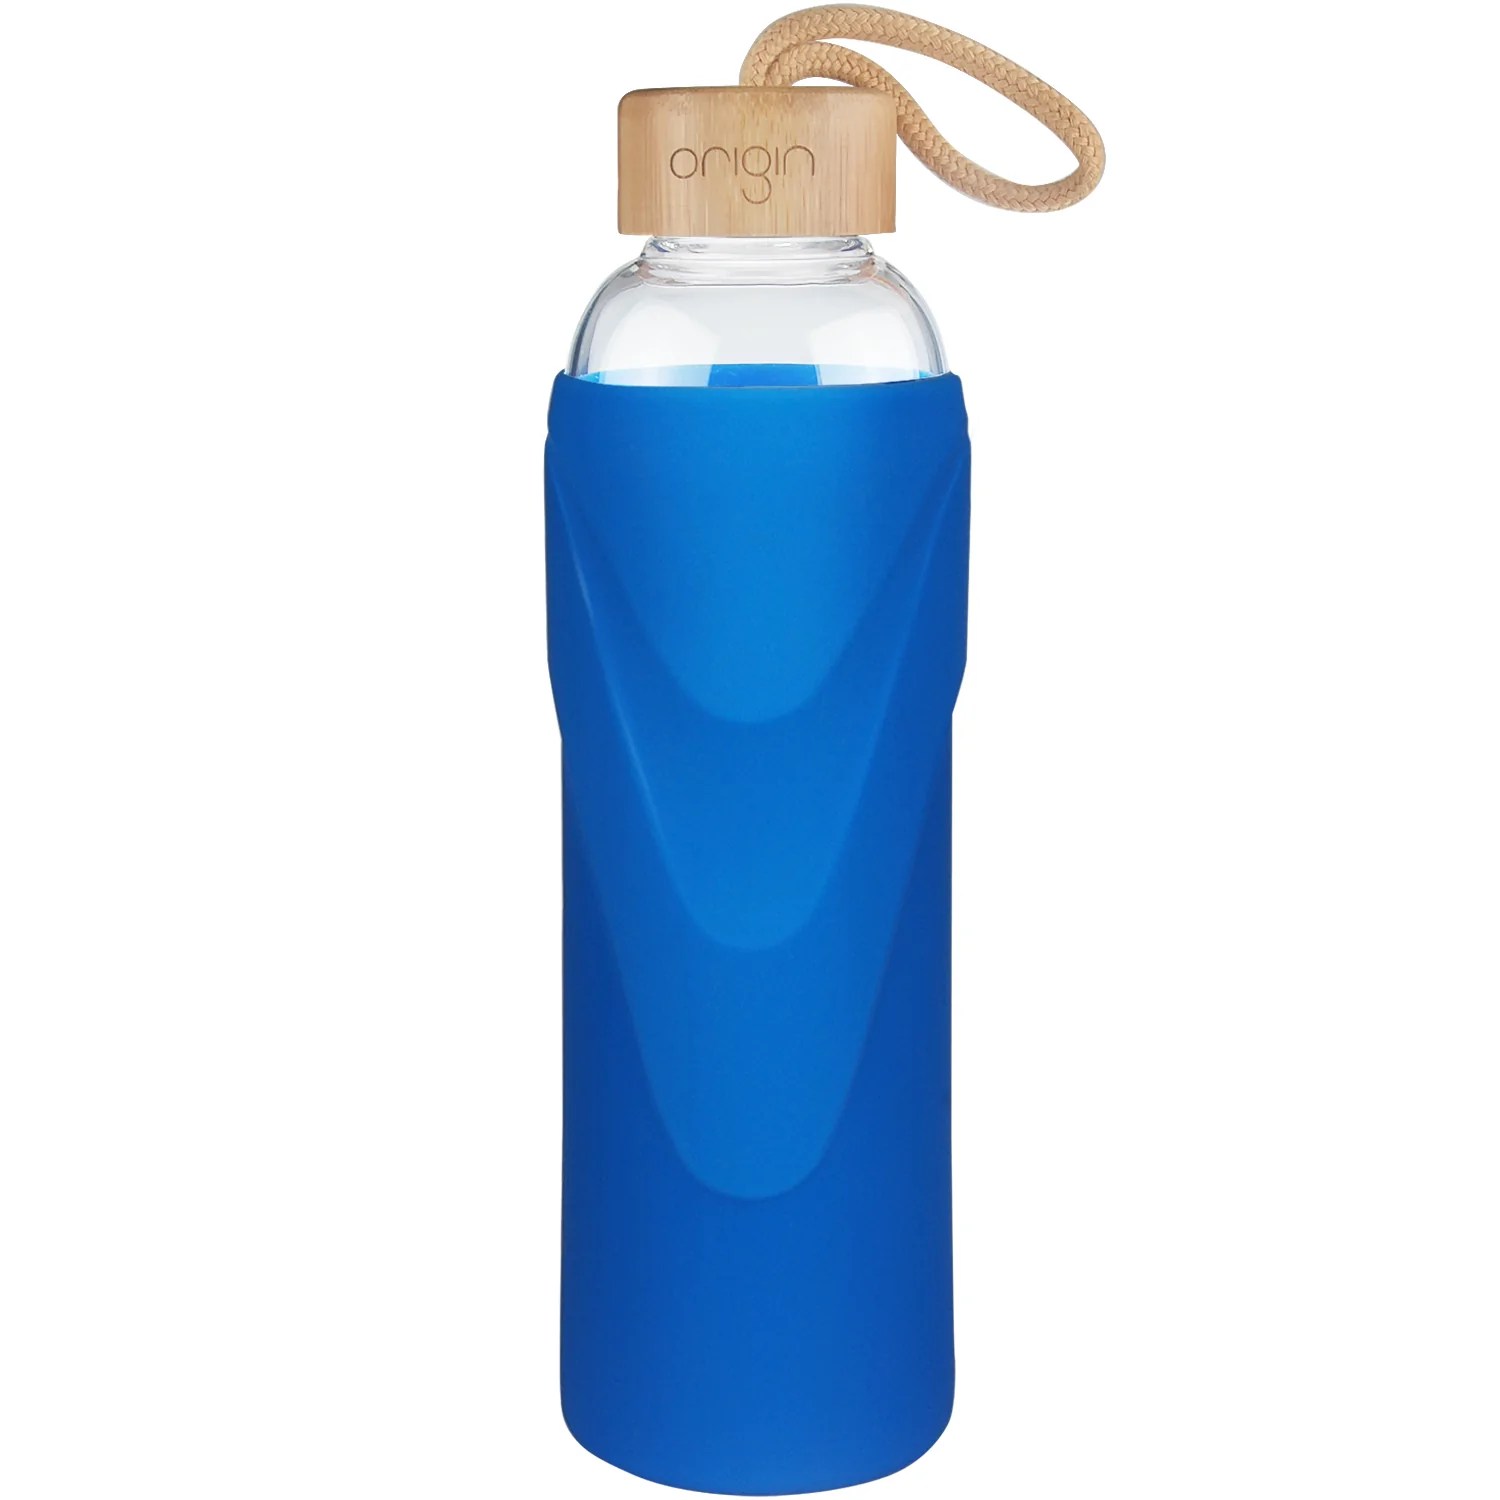 Origin Eco-friendly glass/silicone design Water Bottle